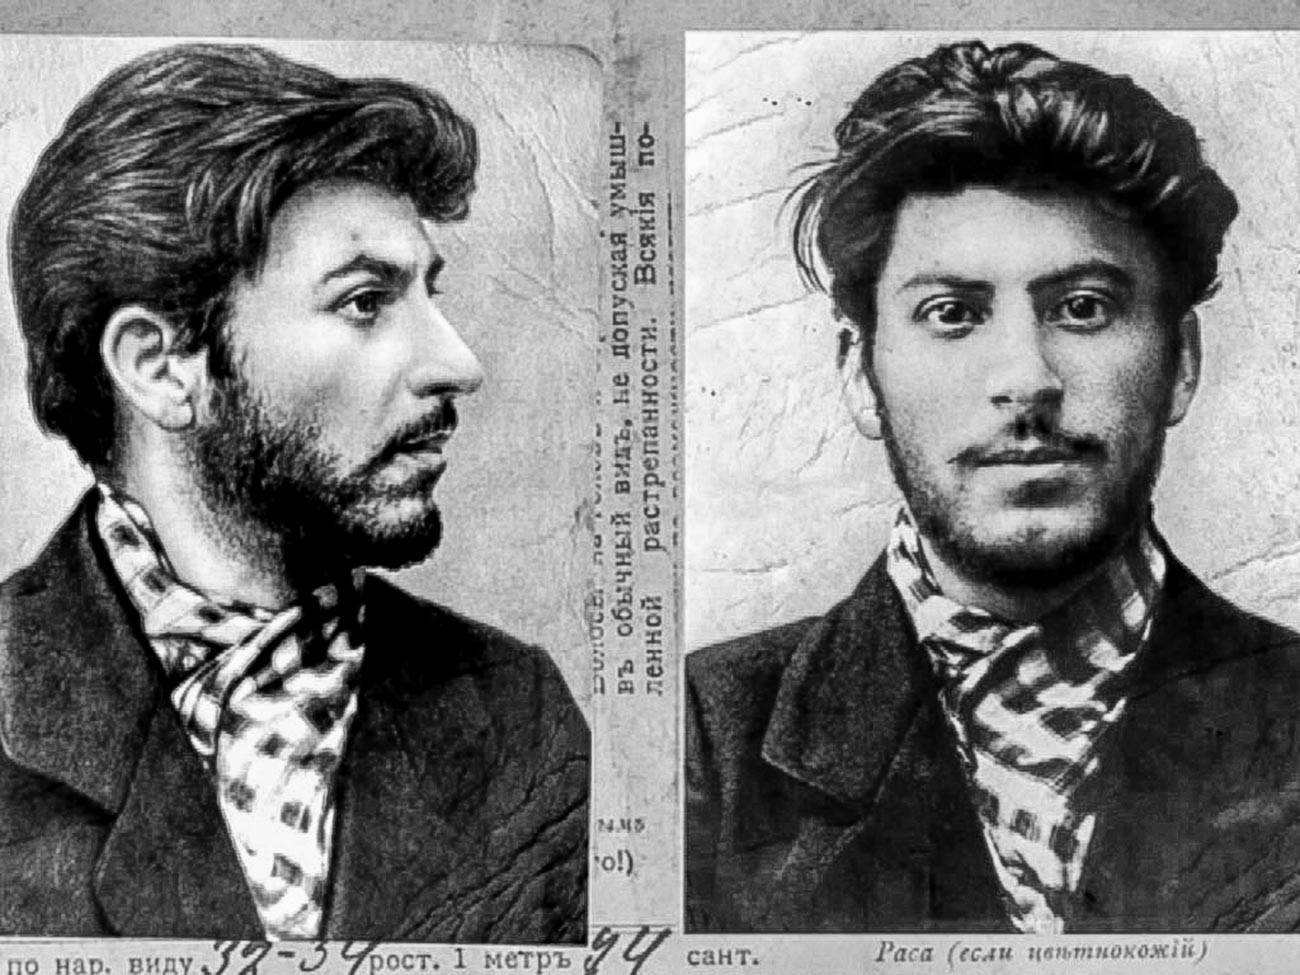 Josef Stalin im Alte von 23 Jahren